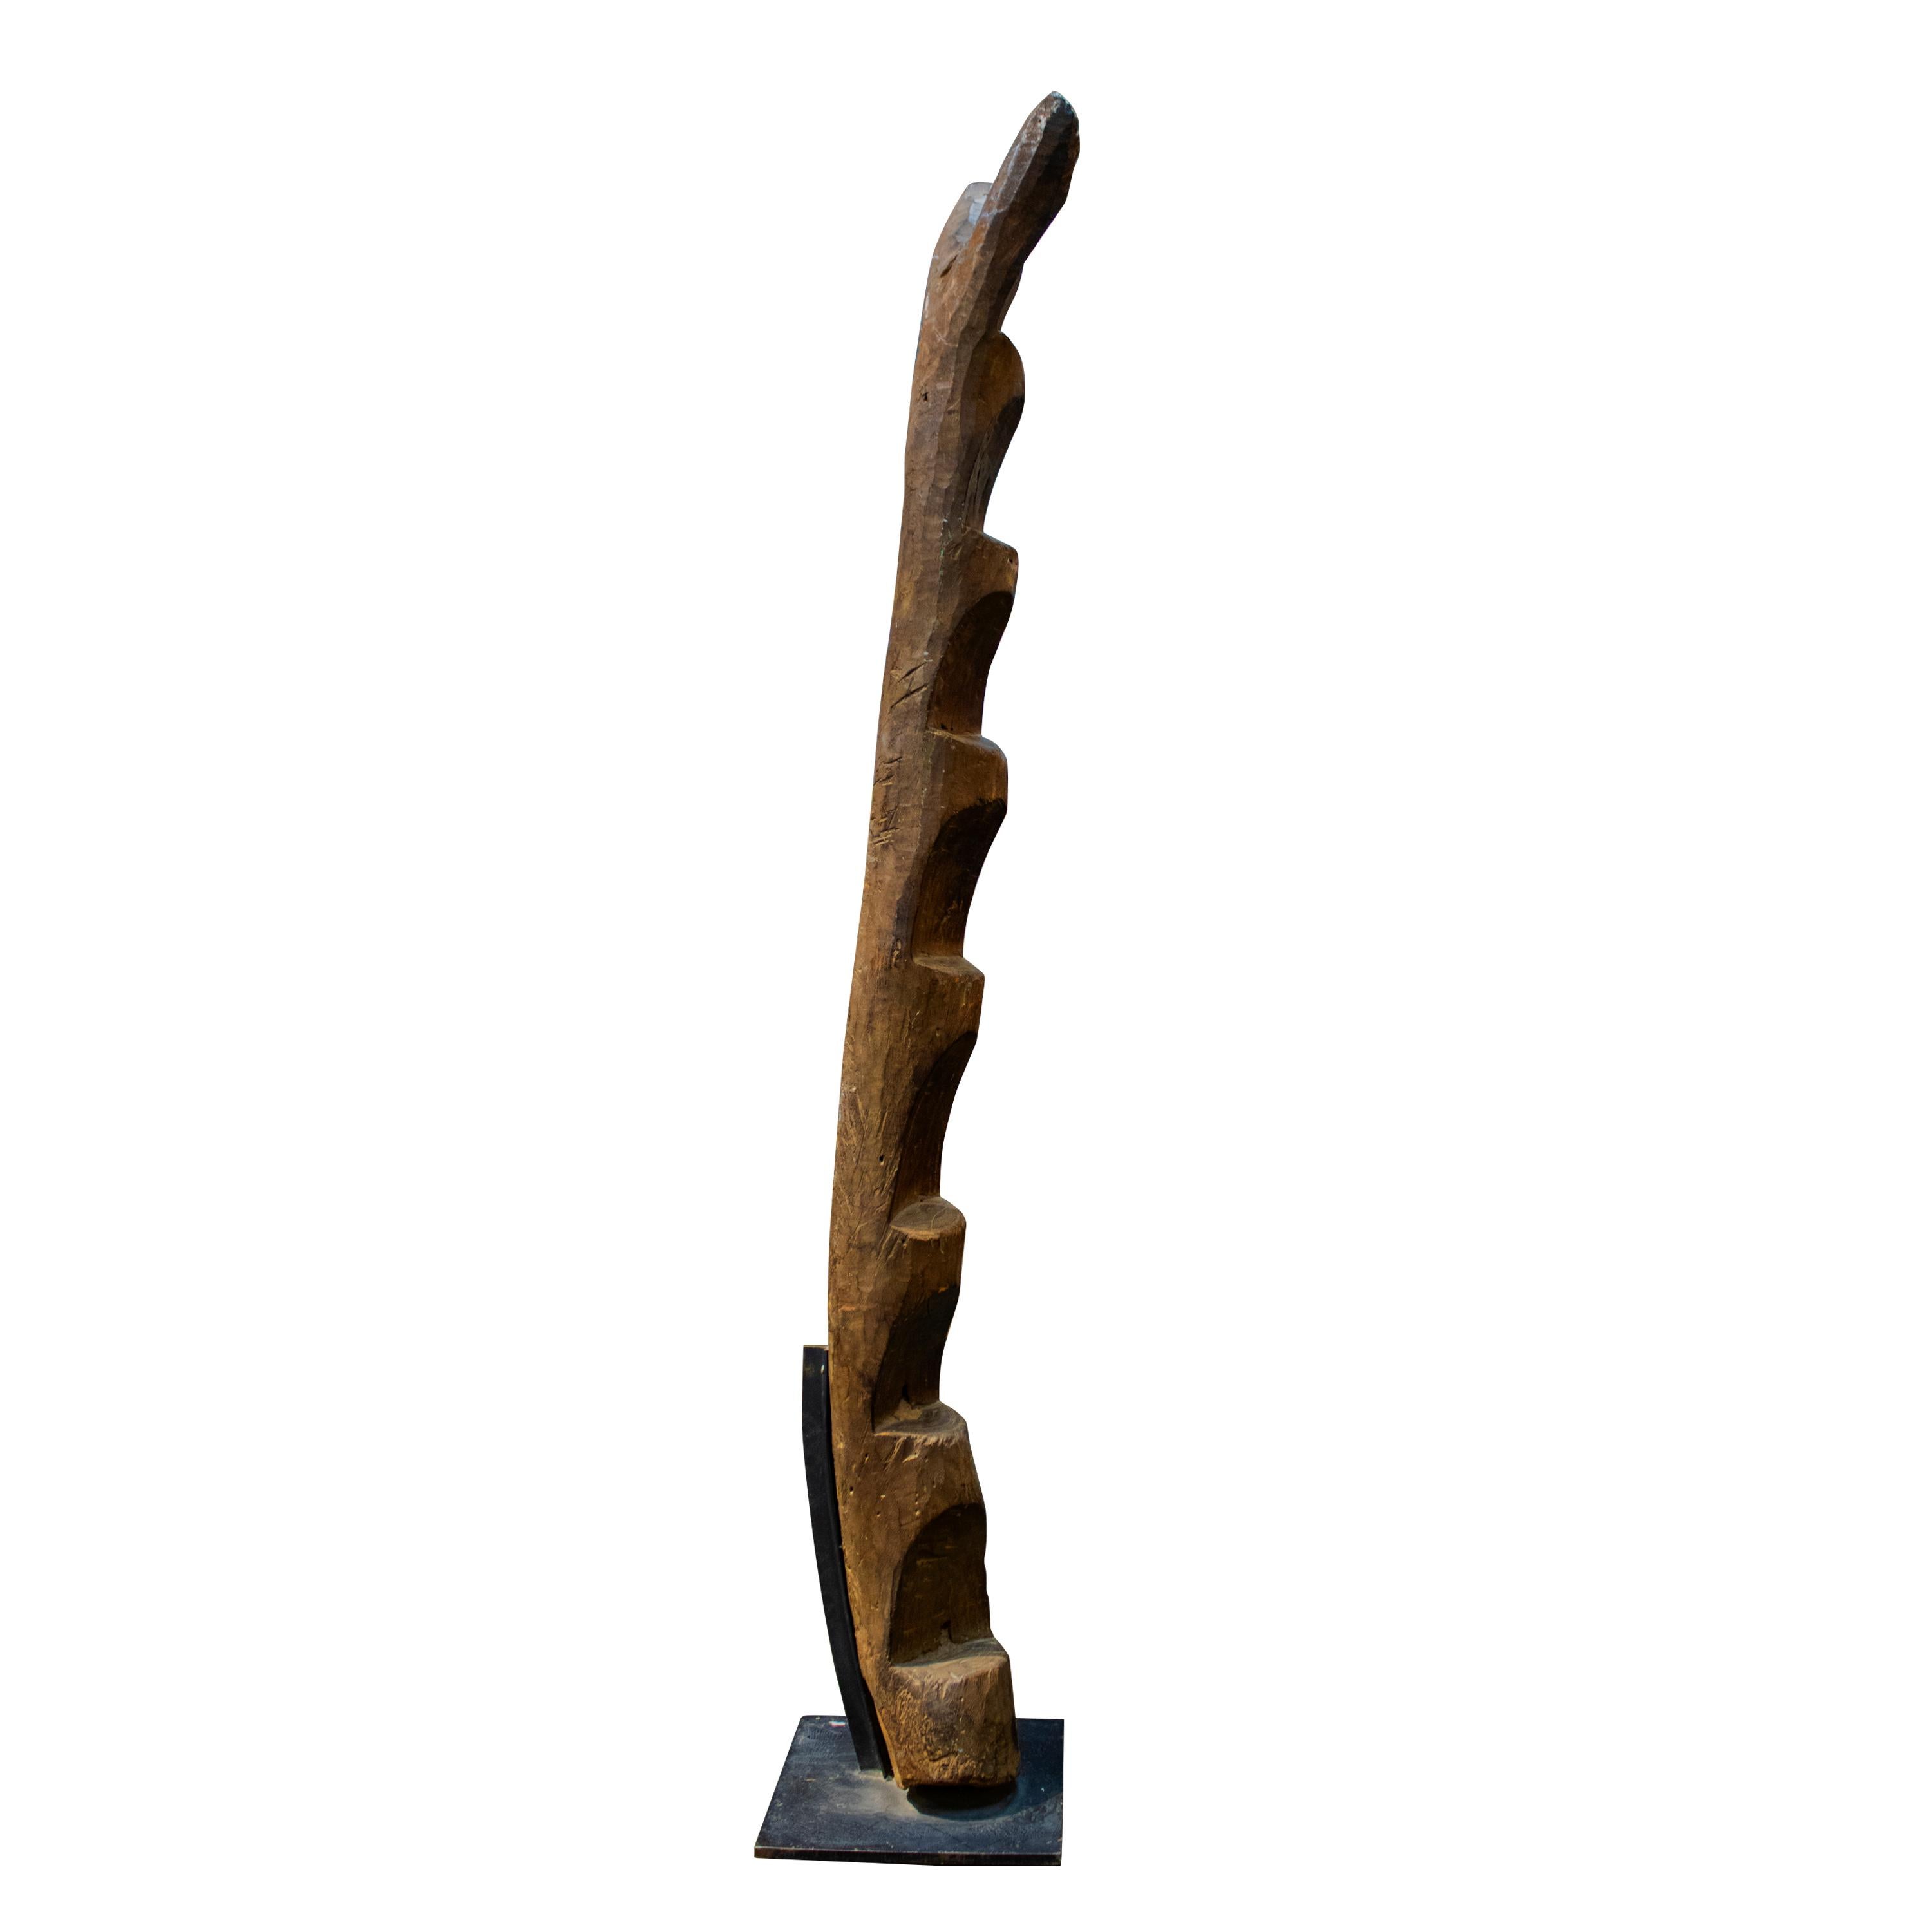 Eine klassische Dogon-Leiter aus dunklem Holz, montiert auf einem stabilen Metallständer. 

Das Volk der Dogon lebt im Südosten von Mali und Burkina Faso. Obwohl sie von Muslimen umgeben sind, sind sie ihrer angestammten Religion treu geblieben